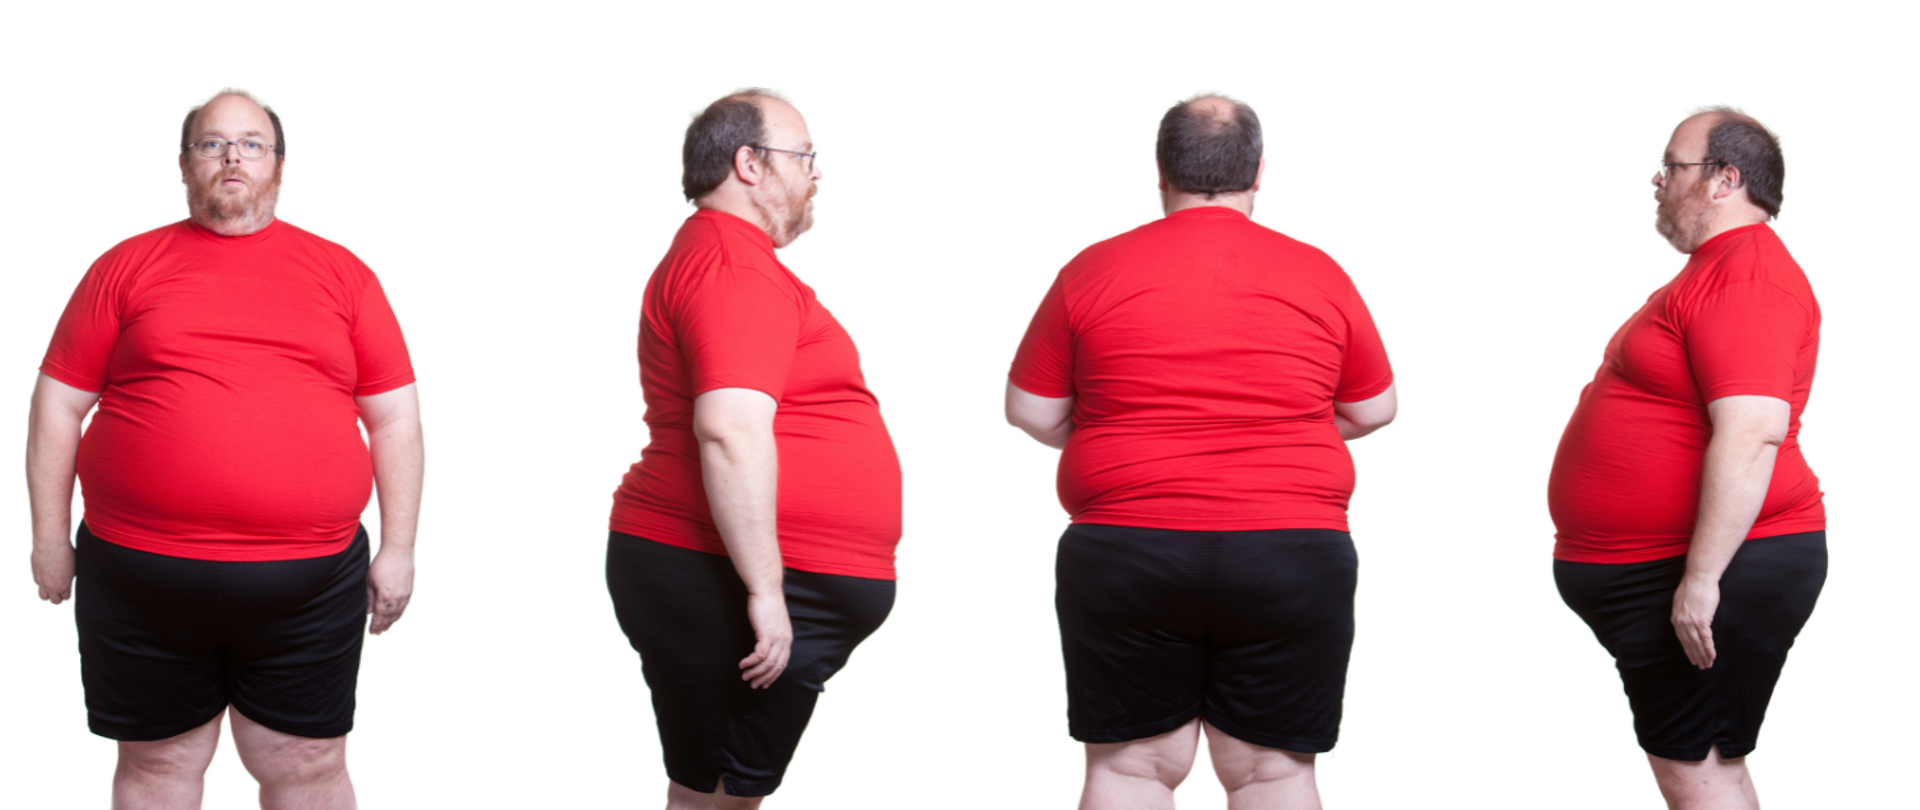 Zdjęcie przedstawia otyłego mężczyznę z przodu, od tyłu i z boku. Ubrany jest w obcisły czerwony podkoszulek i czarne spodenki.